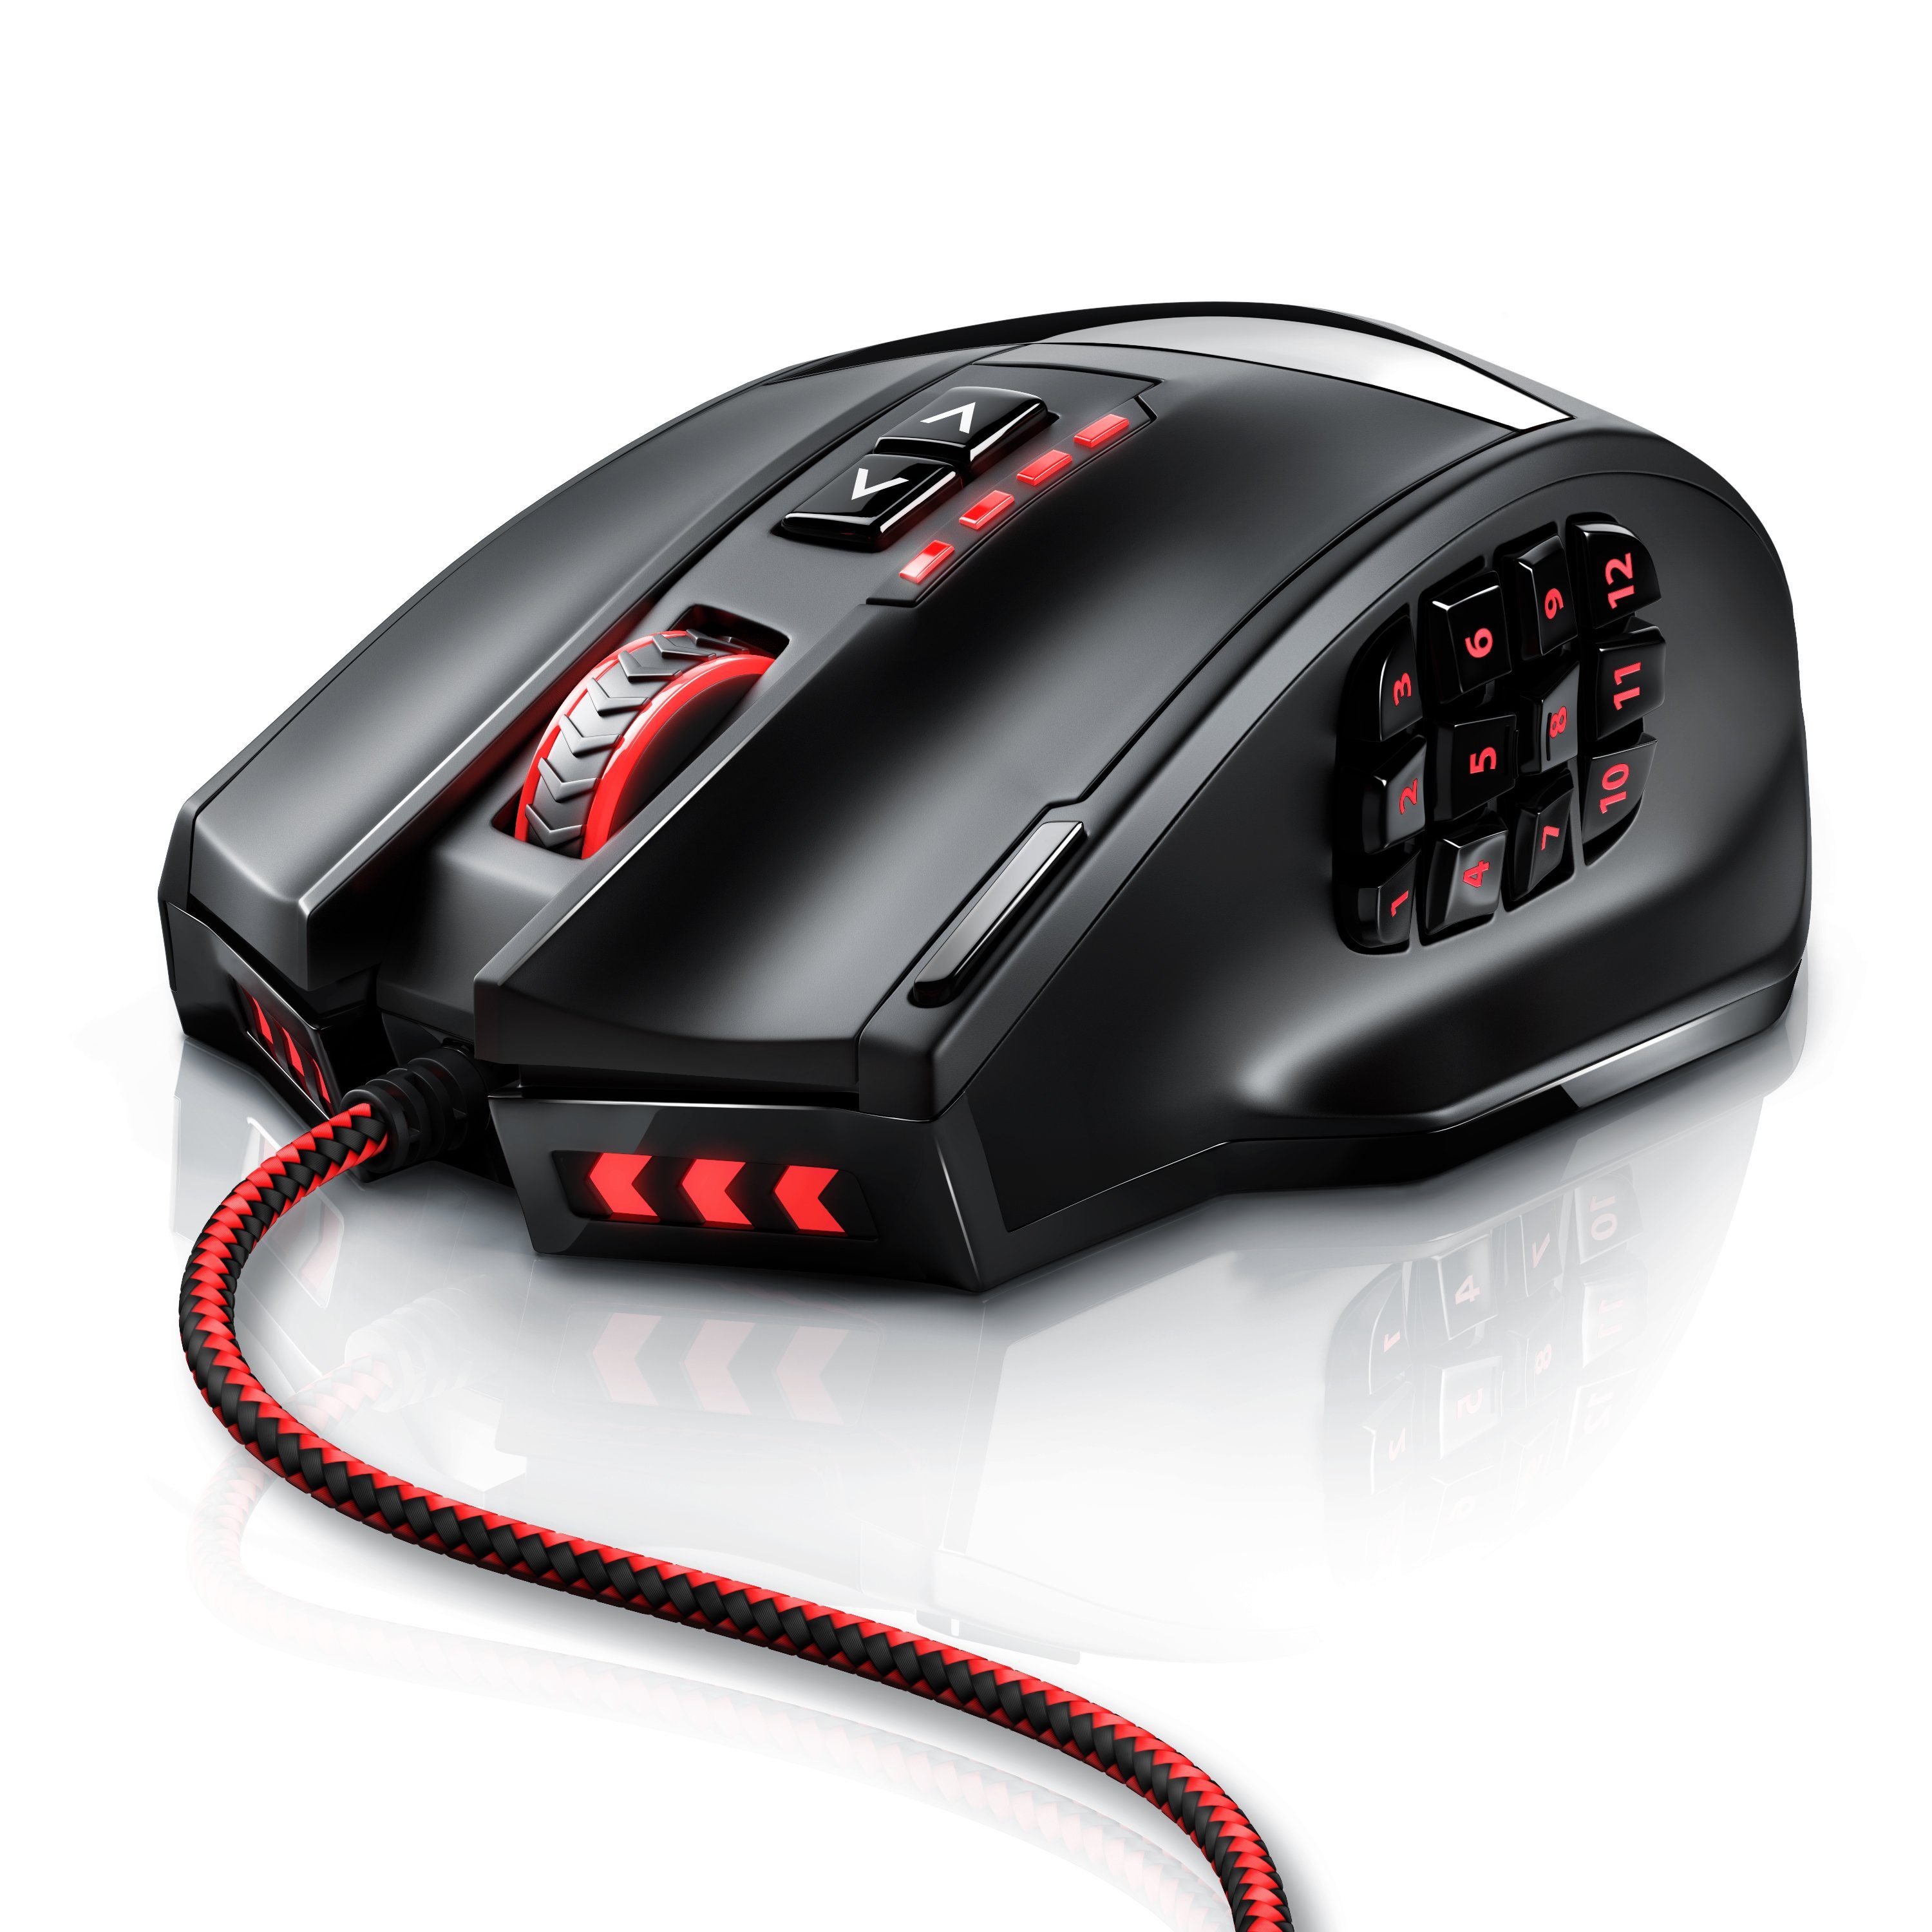 Titanwolf Gaming-Maus (kabelgebunden, MMO 16400dpi, dpi, 18 USB programmierbare mit Gewichte) Mouse Tasten, 1000